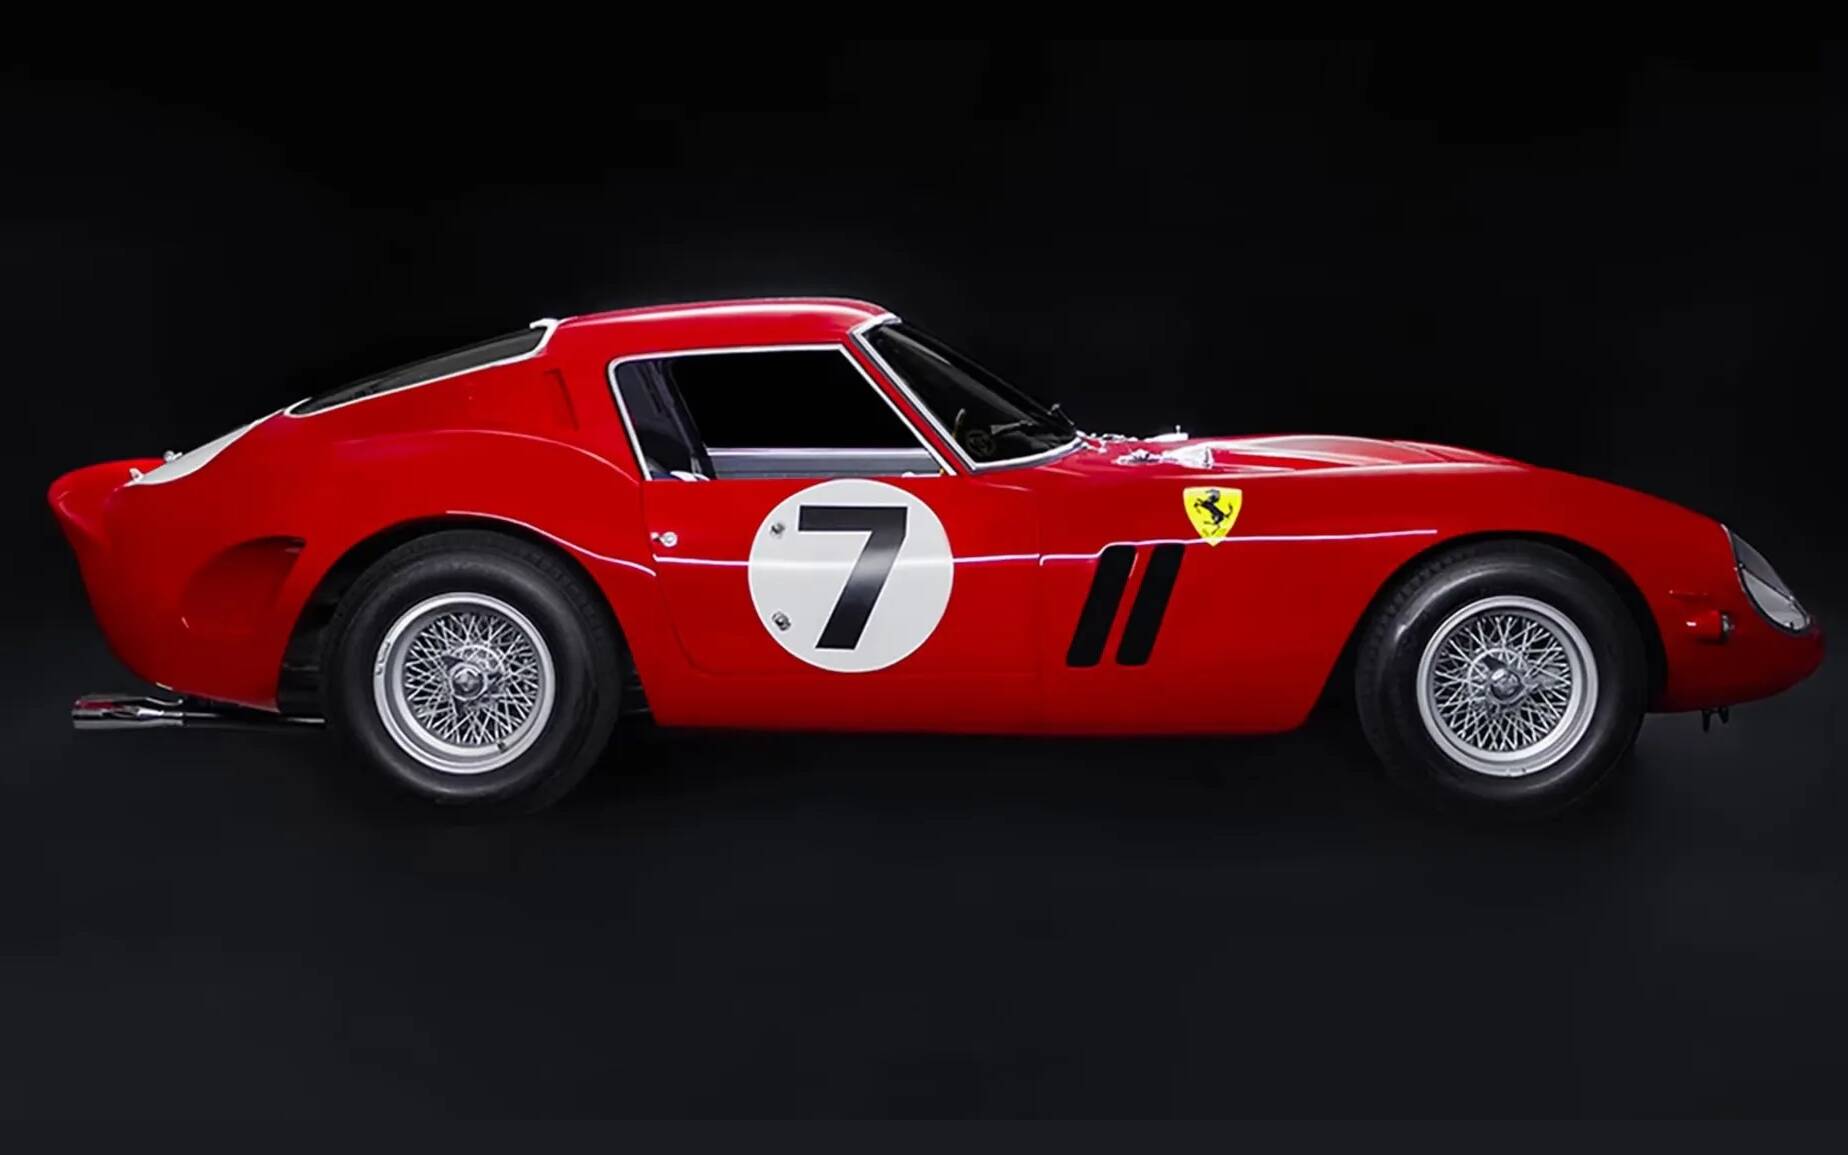 vendre - Cette Ferrari 330 LM 1962 pourrait se vendre 80 M$ à l’encan 587556-cette-ferrari-330-lm-1962-pourrait-se-vendre-80-m-a-l-encan